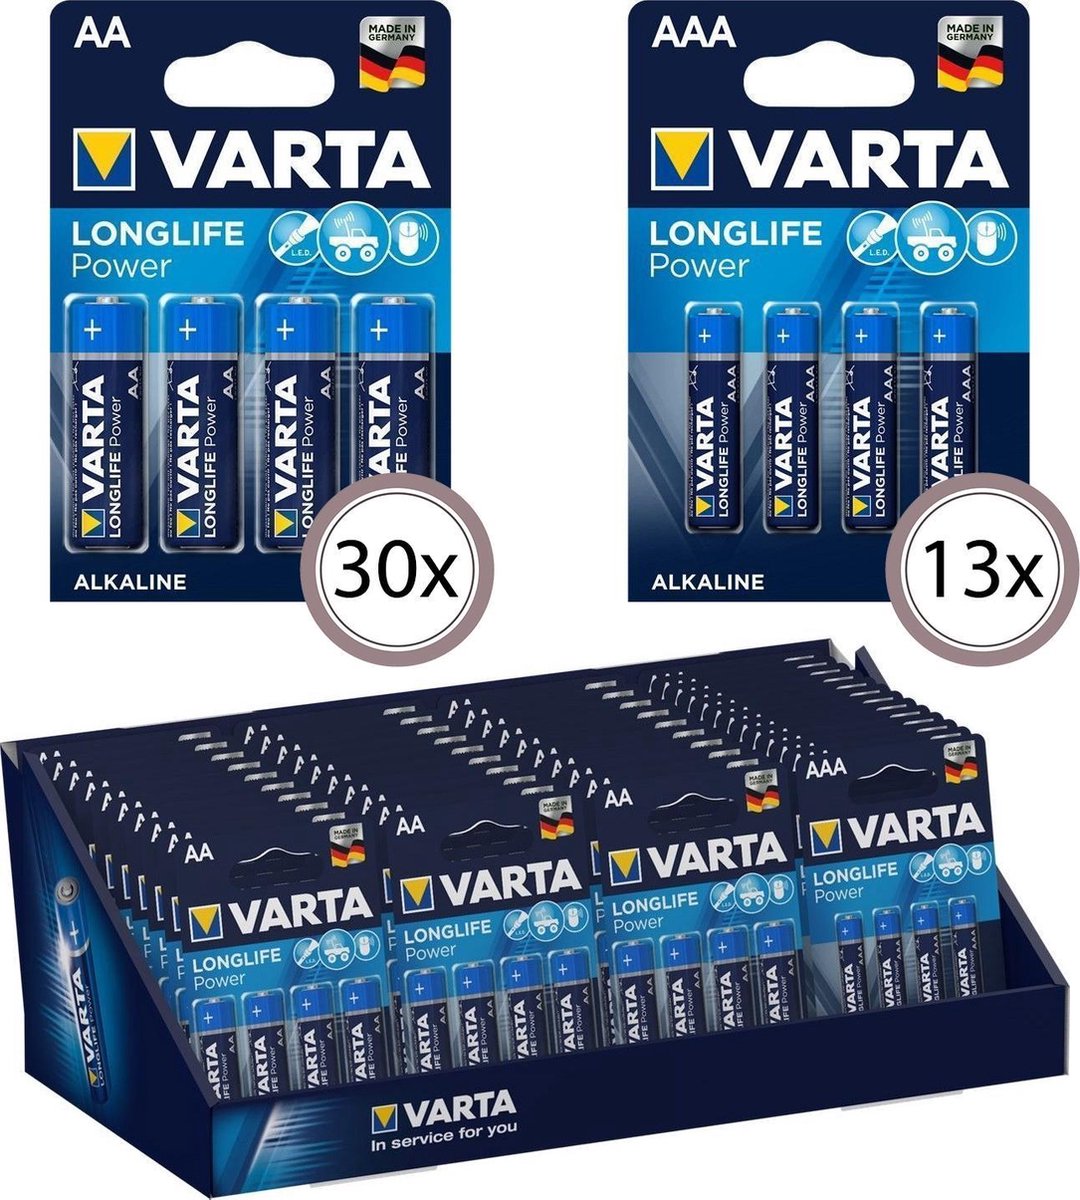 VARTA Counter Display Longlife Power 30x AA - 13x AAA (4 packs)